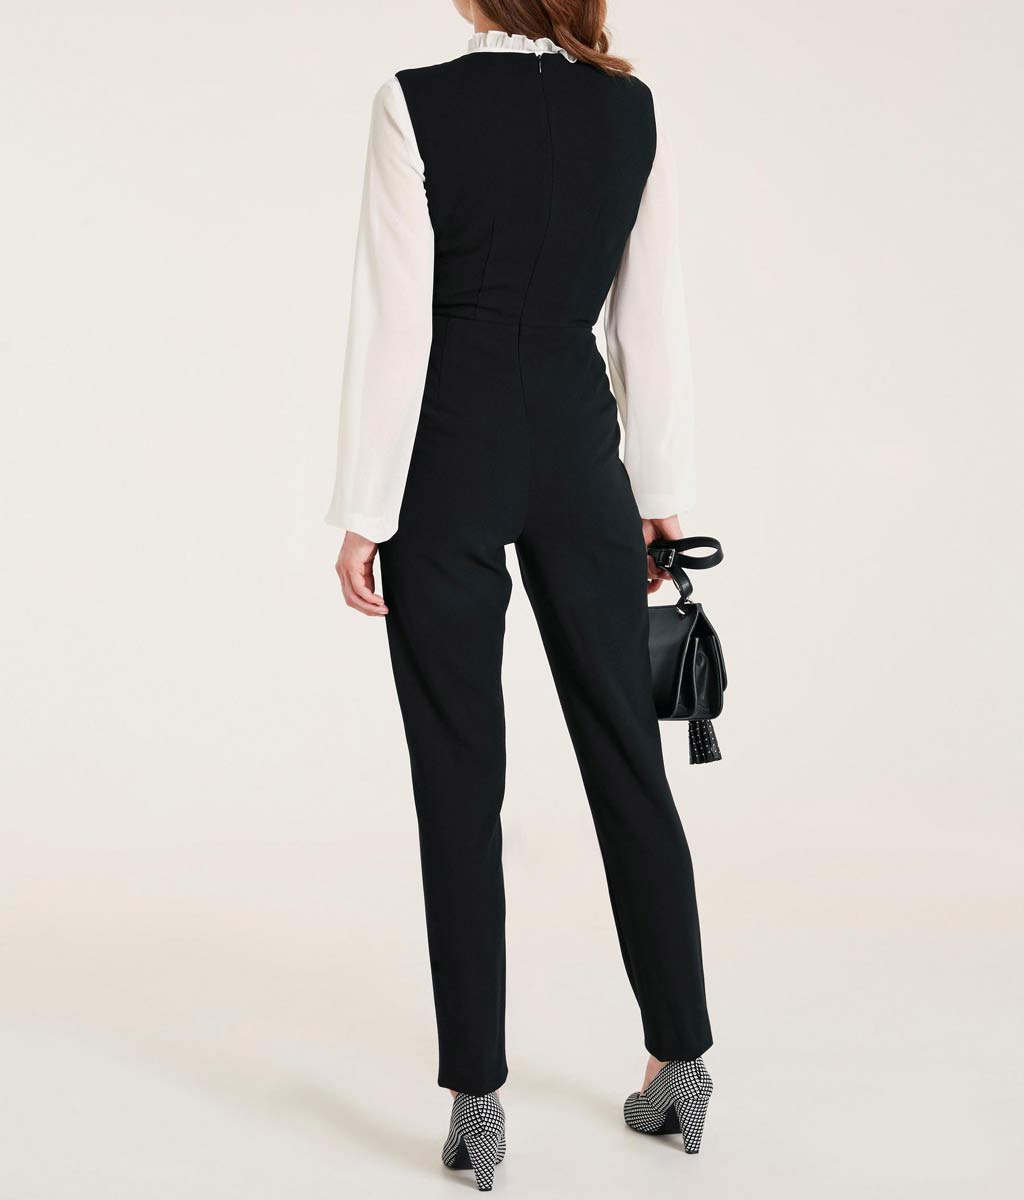 Ashley Brooke Damen Designer-Overall mit Zierknöpfen, schwarz